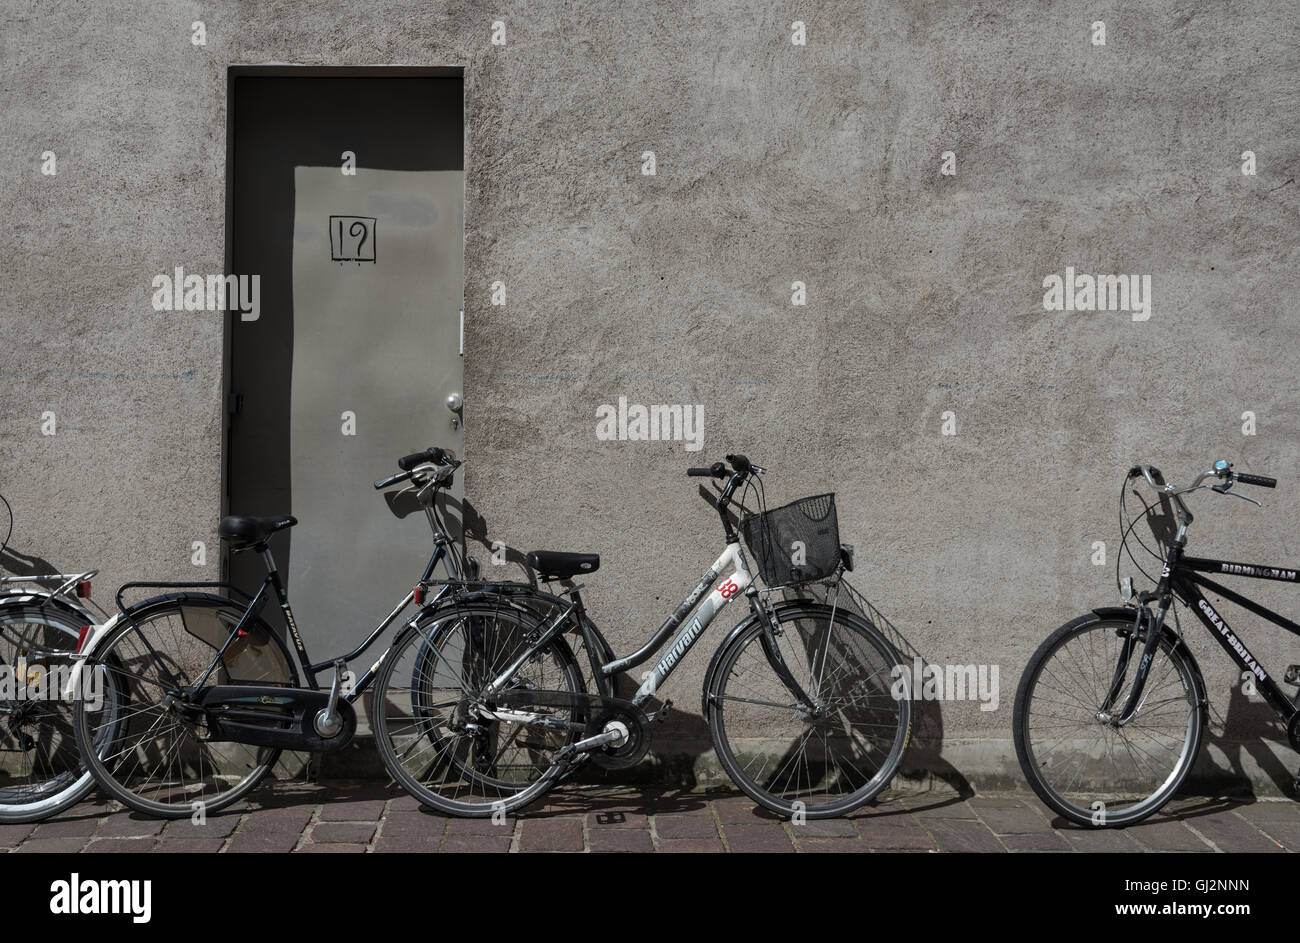 Bruges noleggio bici. Aperto ogni giorno per il noleggio della bicicletta intorno alla città. Biciclette appoggiata contro una parete per le strade di Bruges. Foto Stock